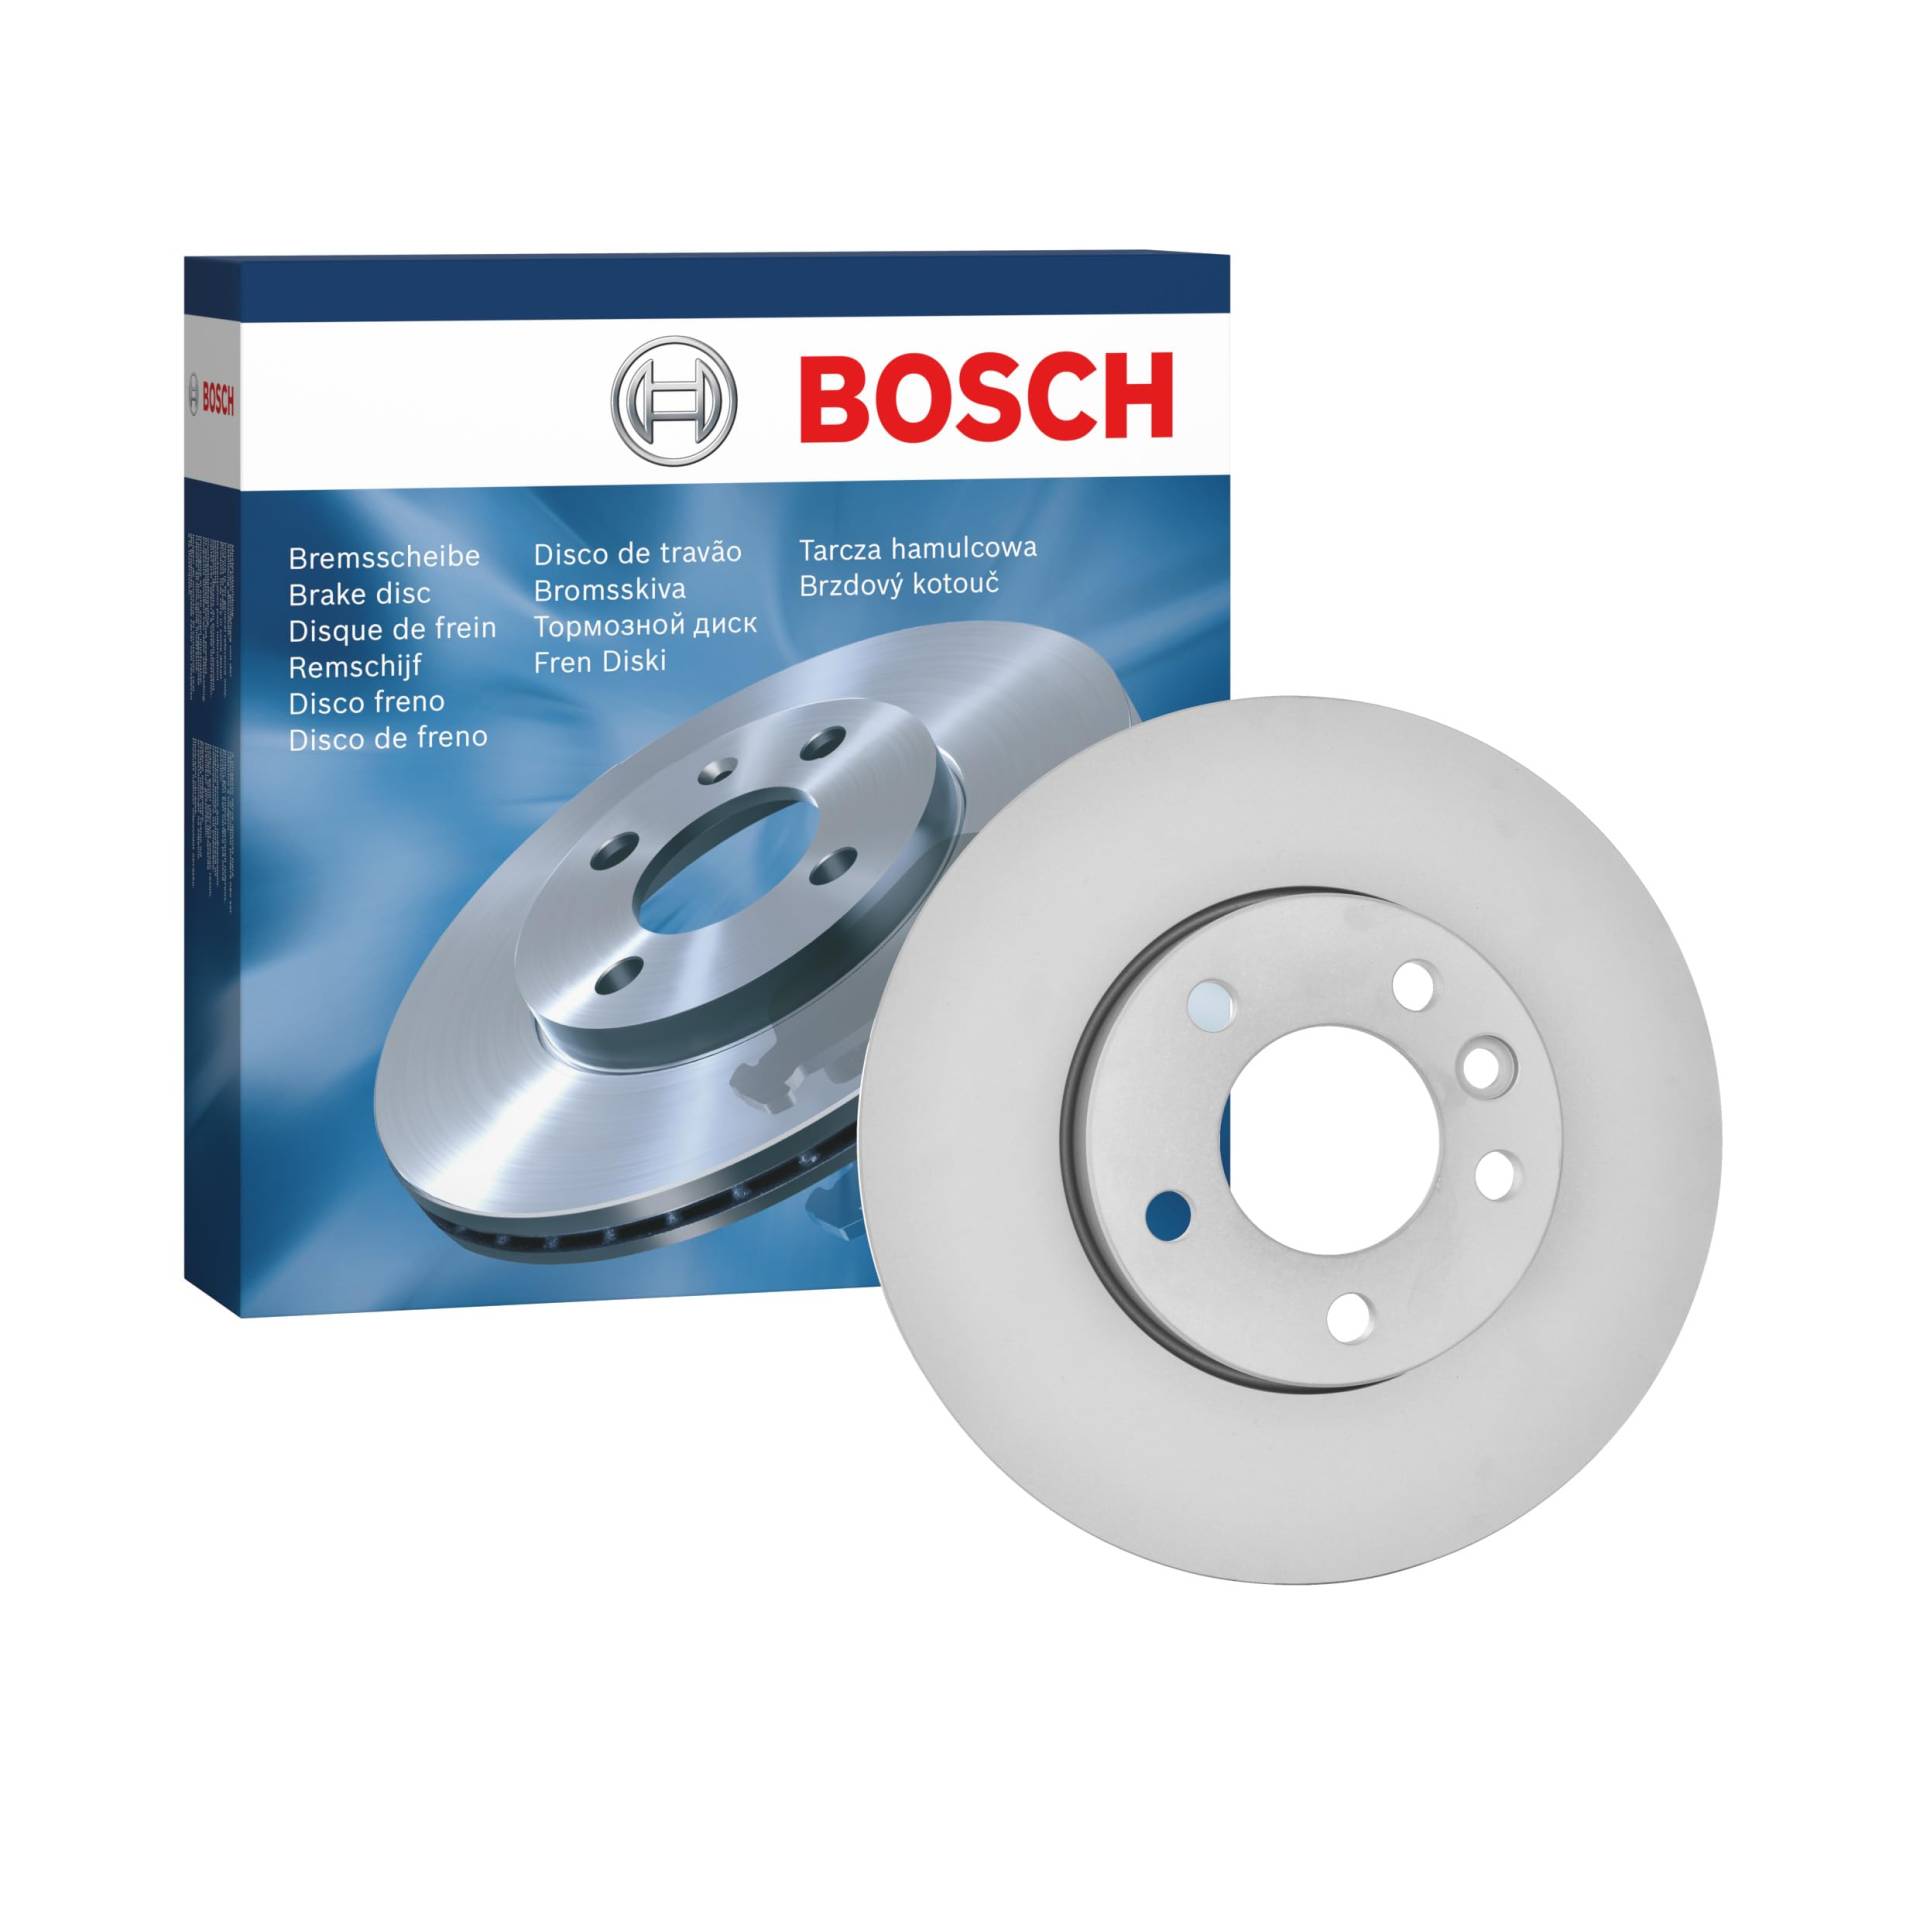 Bosch BD2089 Bremsscheiben - Vorderachse - ECE-R90 Zertifizierung - eine Bremsscheibe von Bosch Automotive